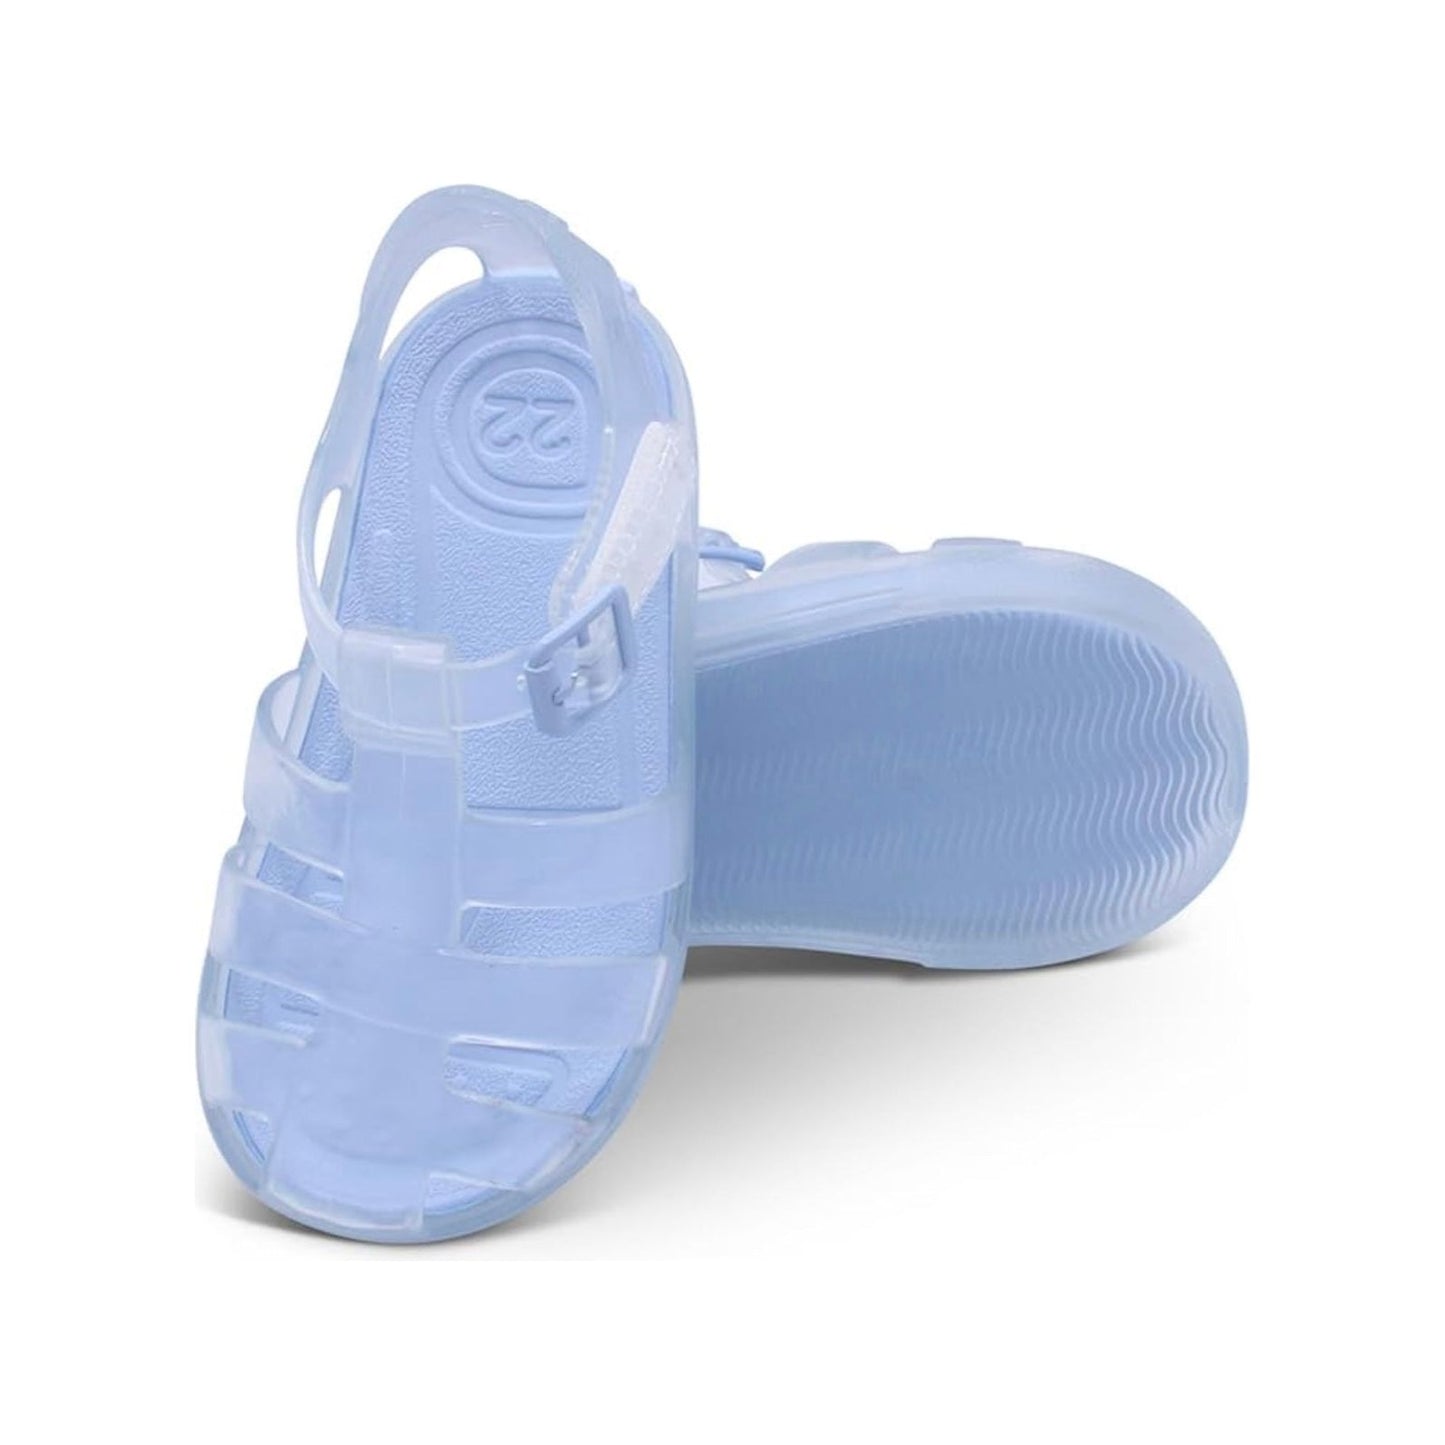 Marena clear jelly sandals - Adora Childrenswear 